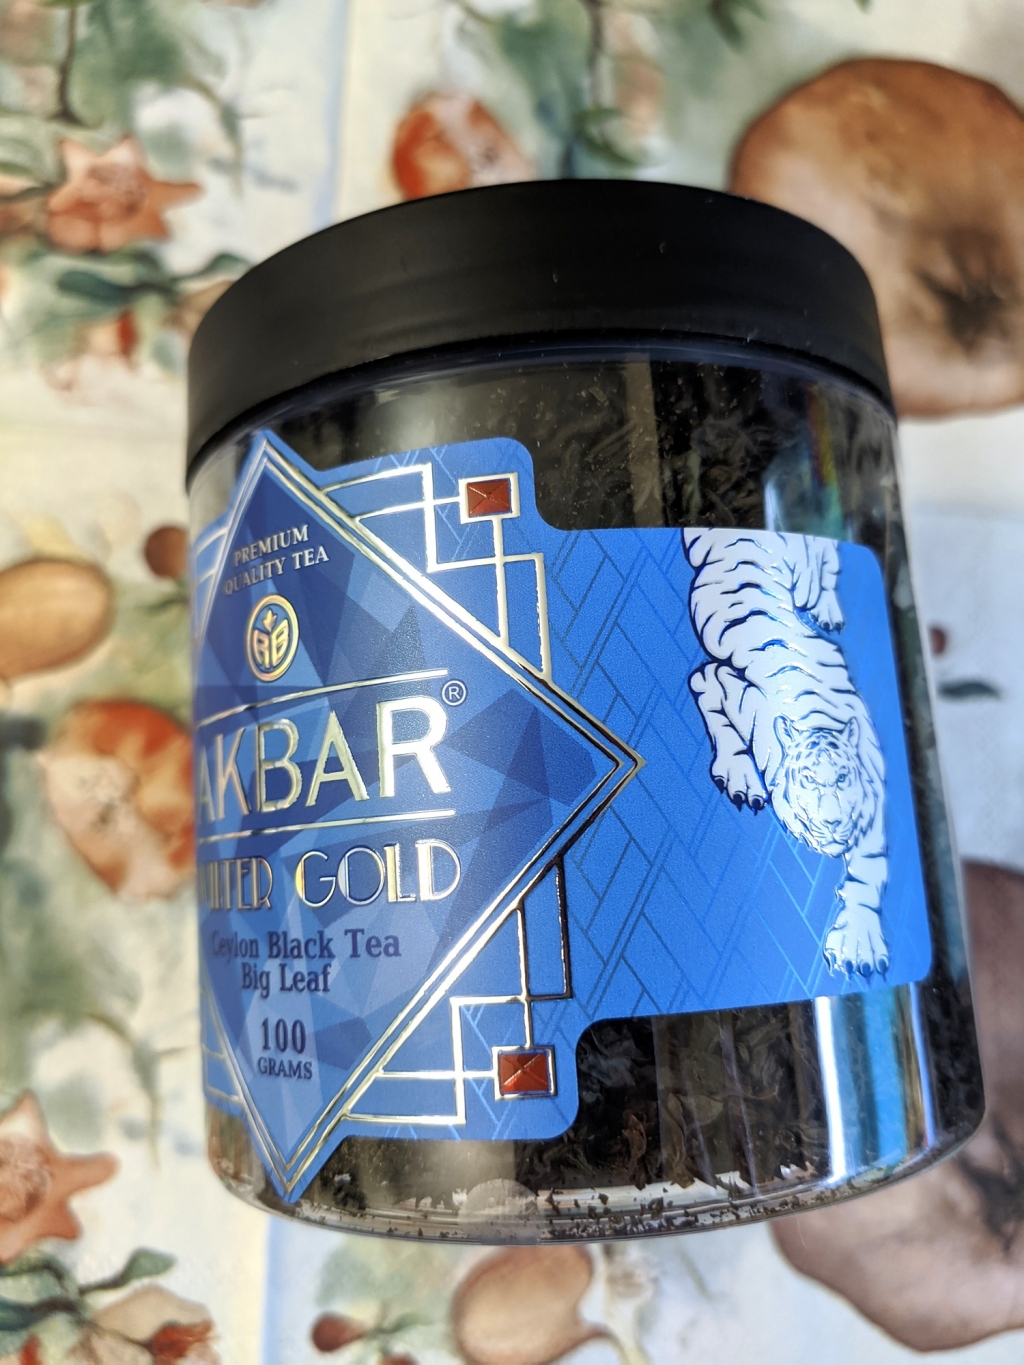 Akbar Winter Gold крупнолистовой черный чай 100 г - Вкусный цейлонский чай от Акбар